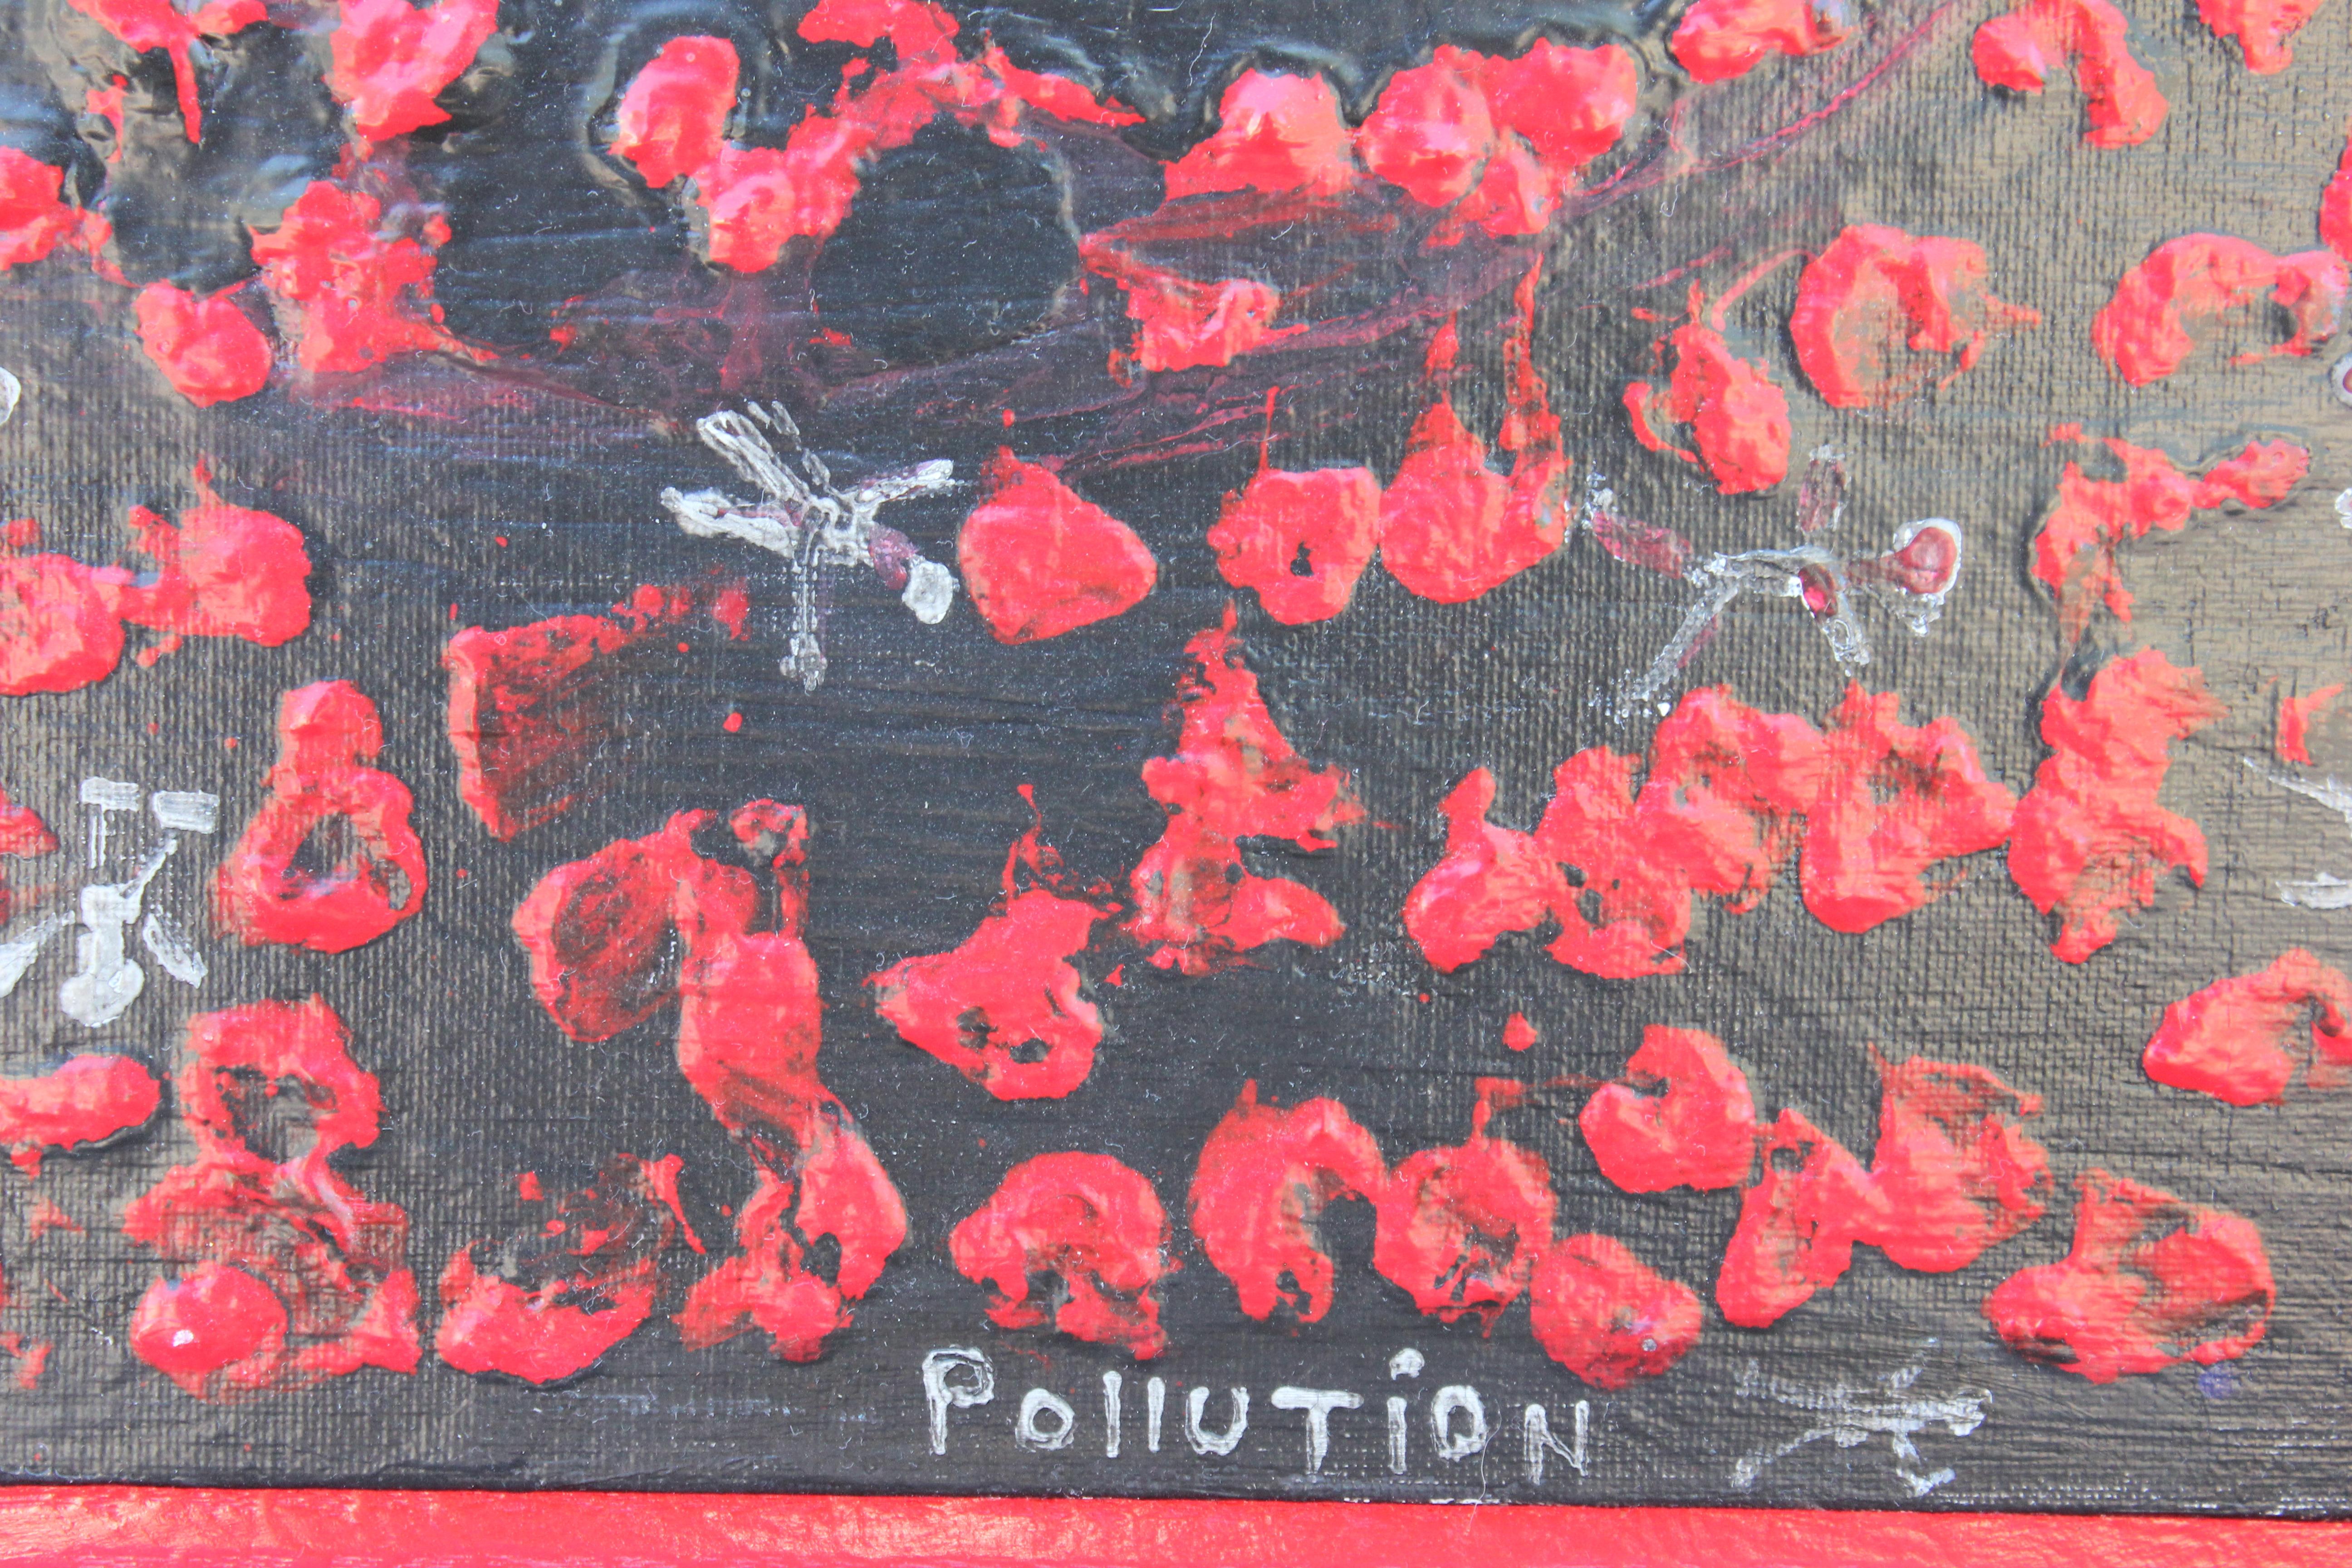 « Pollution », peinture abstraite rouge et noire - Contemporain Painting par Paul Reeves